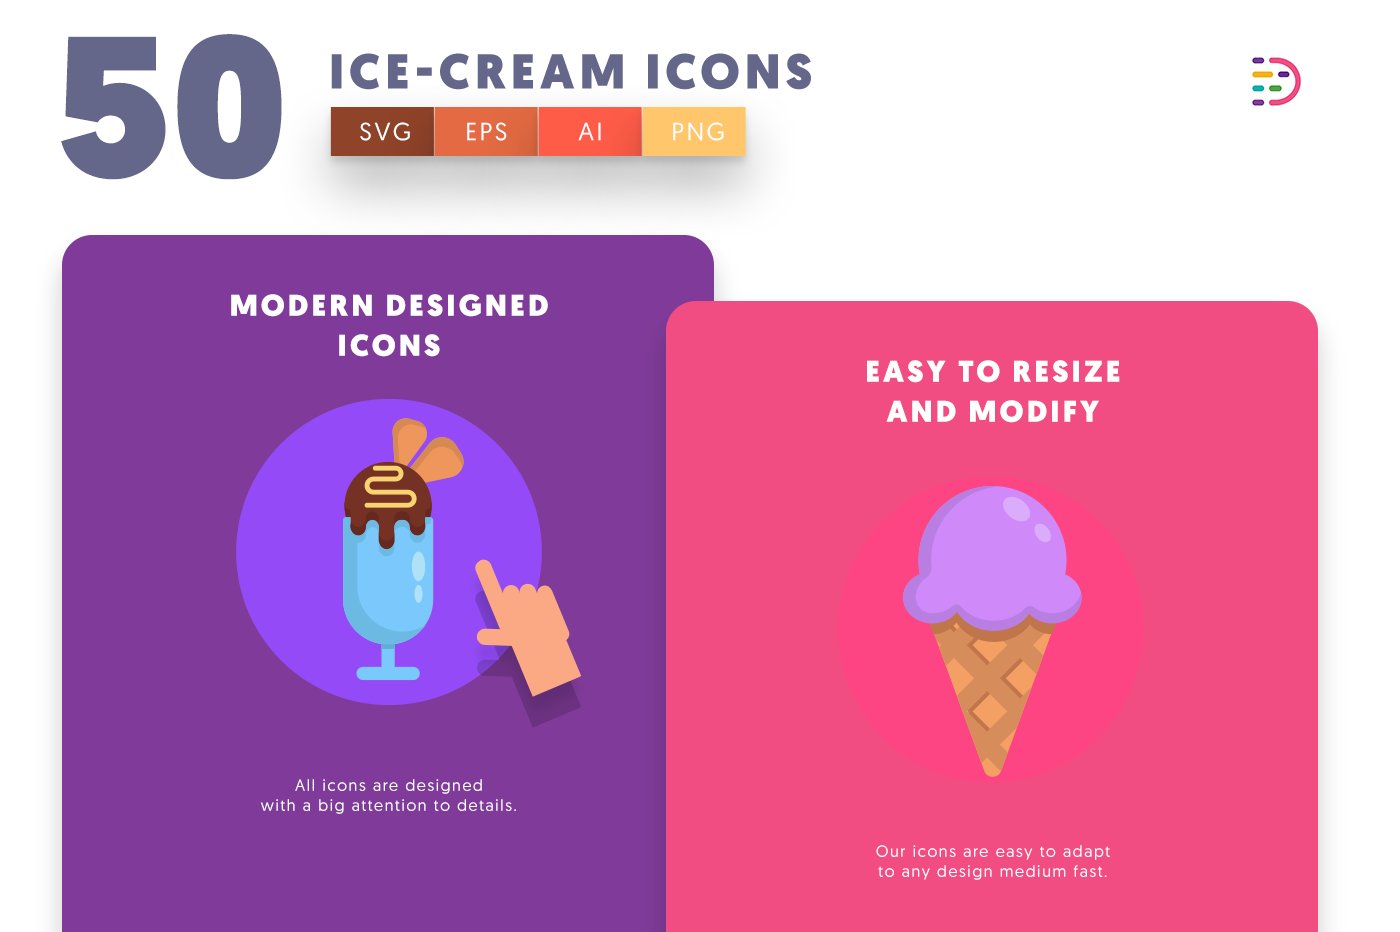 icecream icons cover copy 5 392